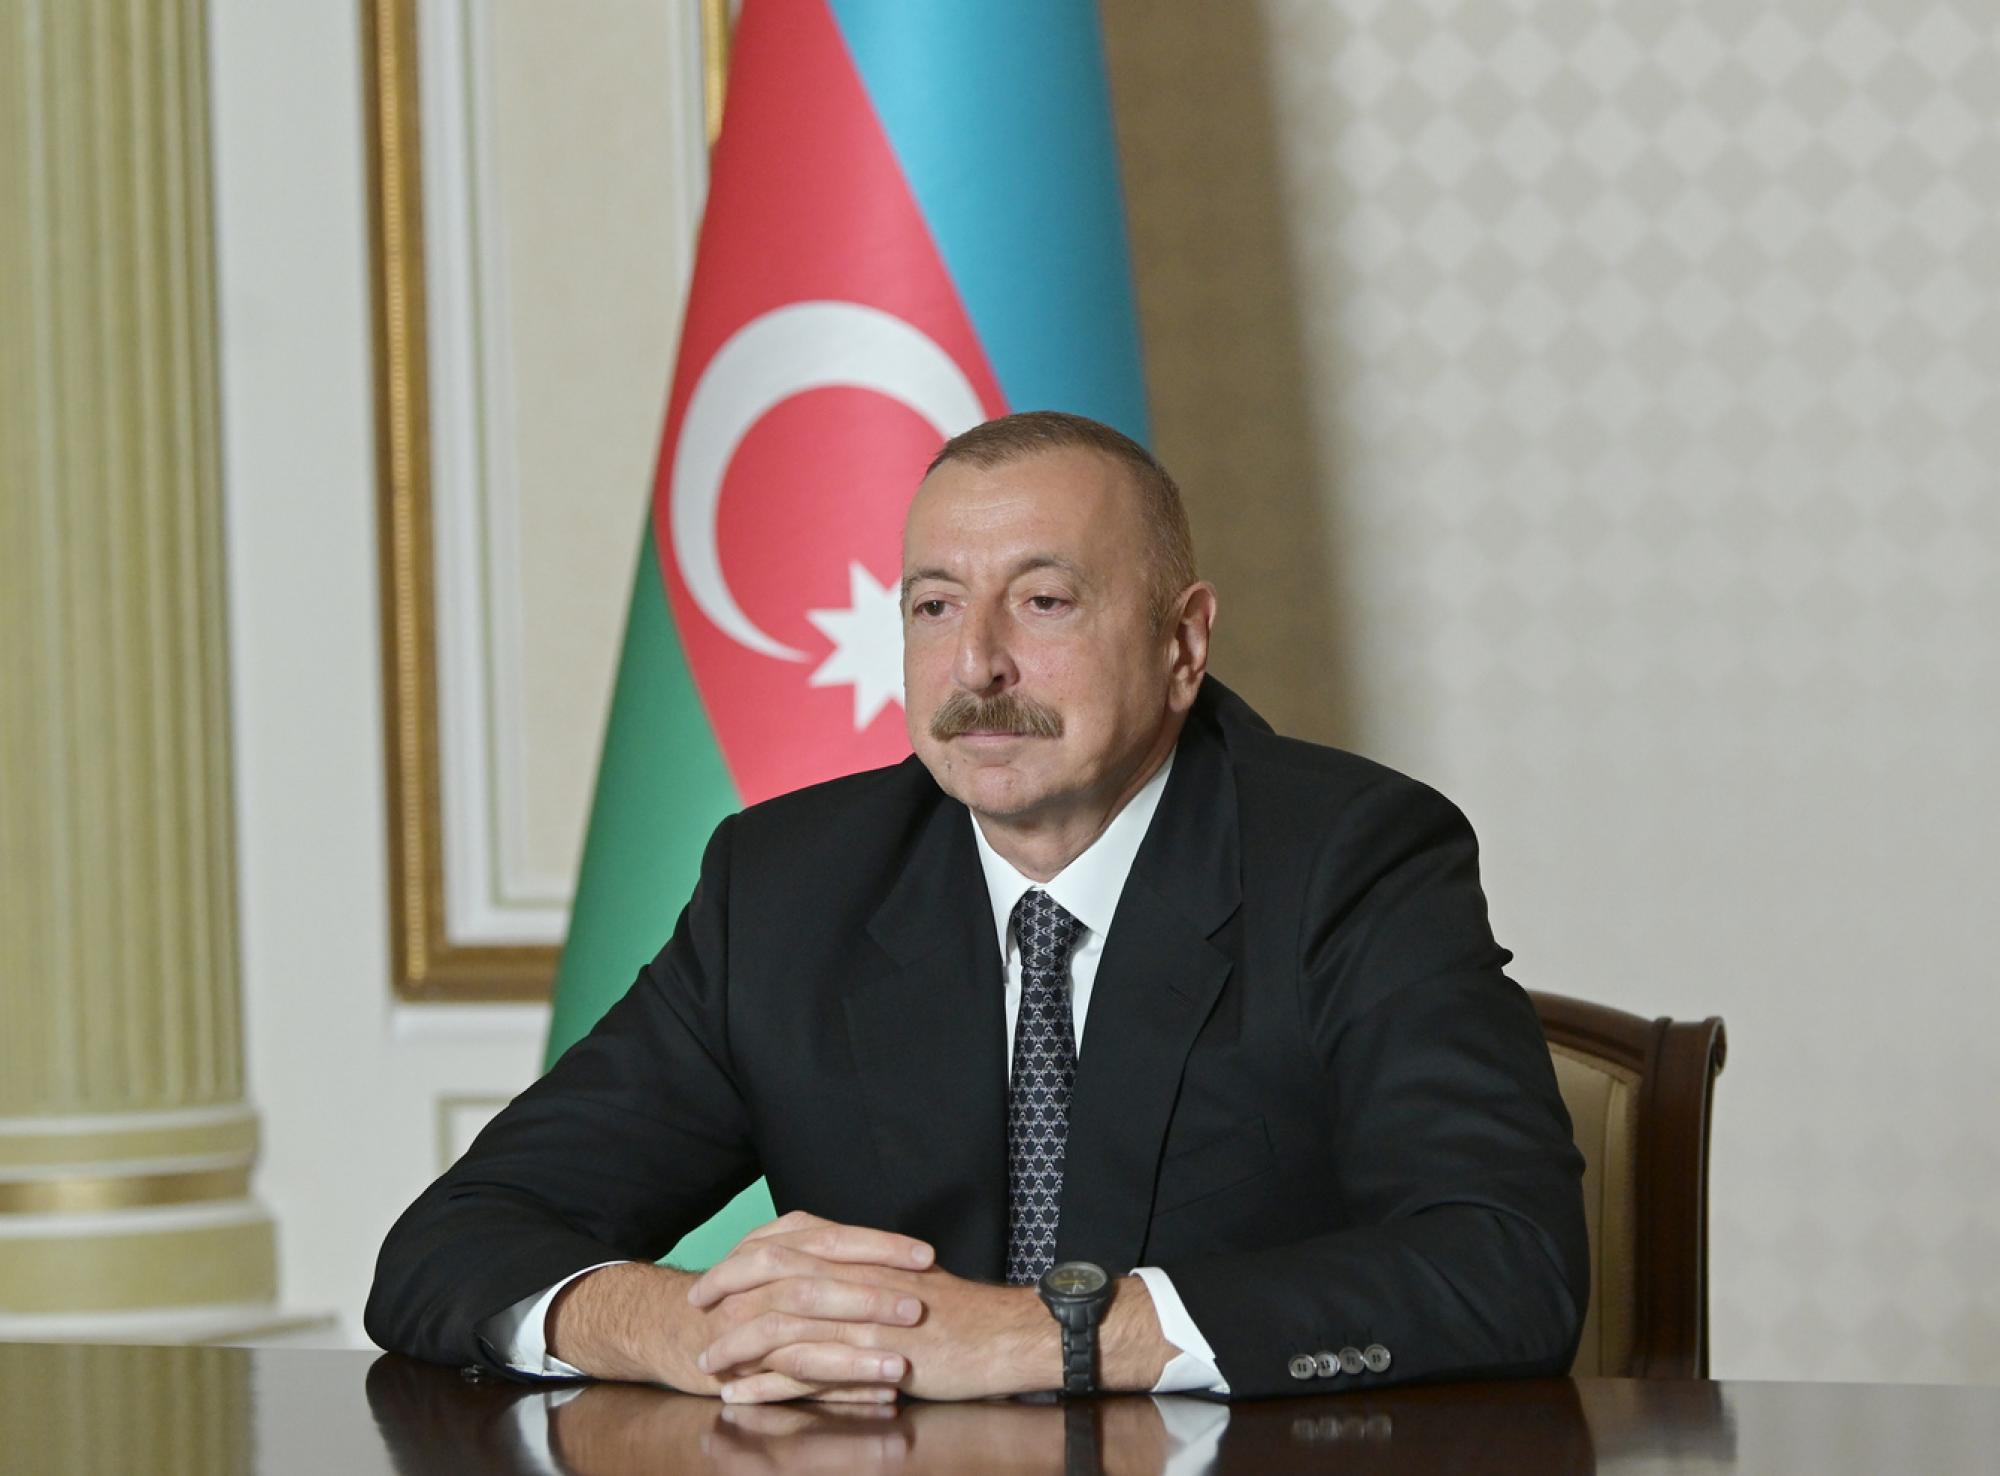 Президент Азербайджана Ильхам Алиев принимает поздравления в связи с 28 Мая - Днем независимости Азербайджанской Республики